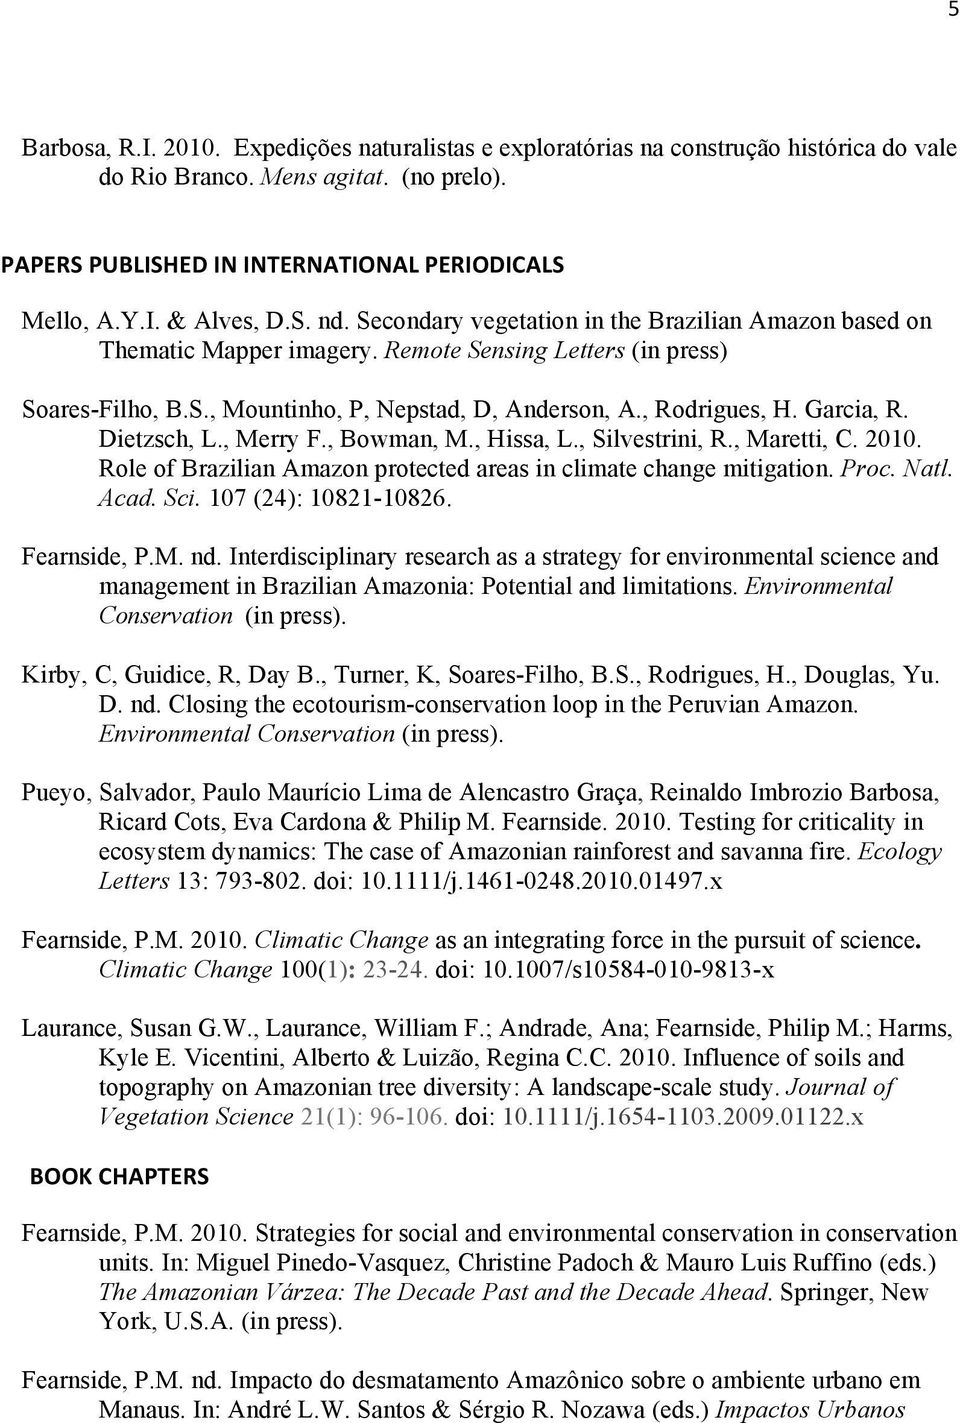 Garcia, R. Dietzsch, L., Merry F., Bowman, M., Hissa, L., Silvestrini, R., Maretti, C. 2010. Role of Brazilian Amazon protected areas in climate change mitigation. Proc. Natl. Acad. Sci.